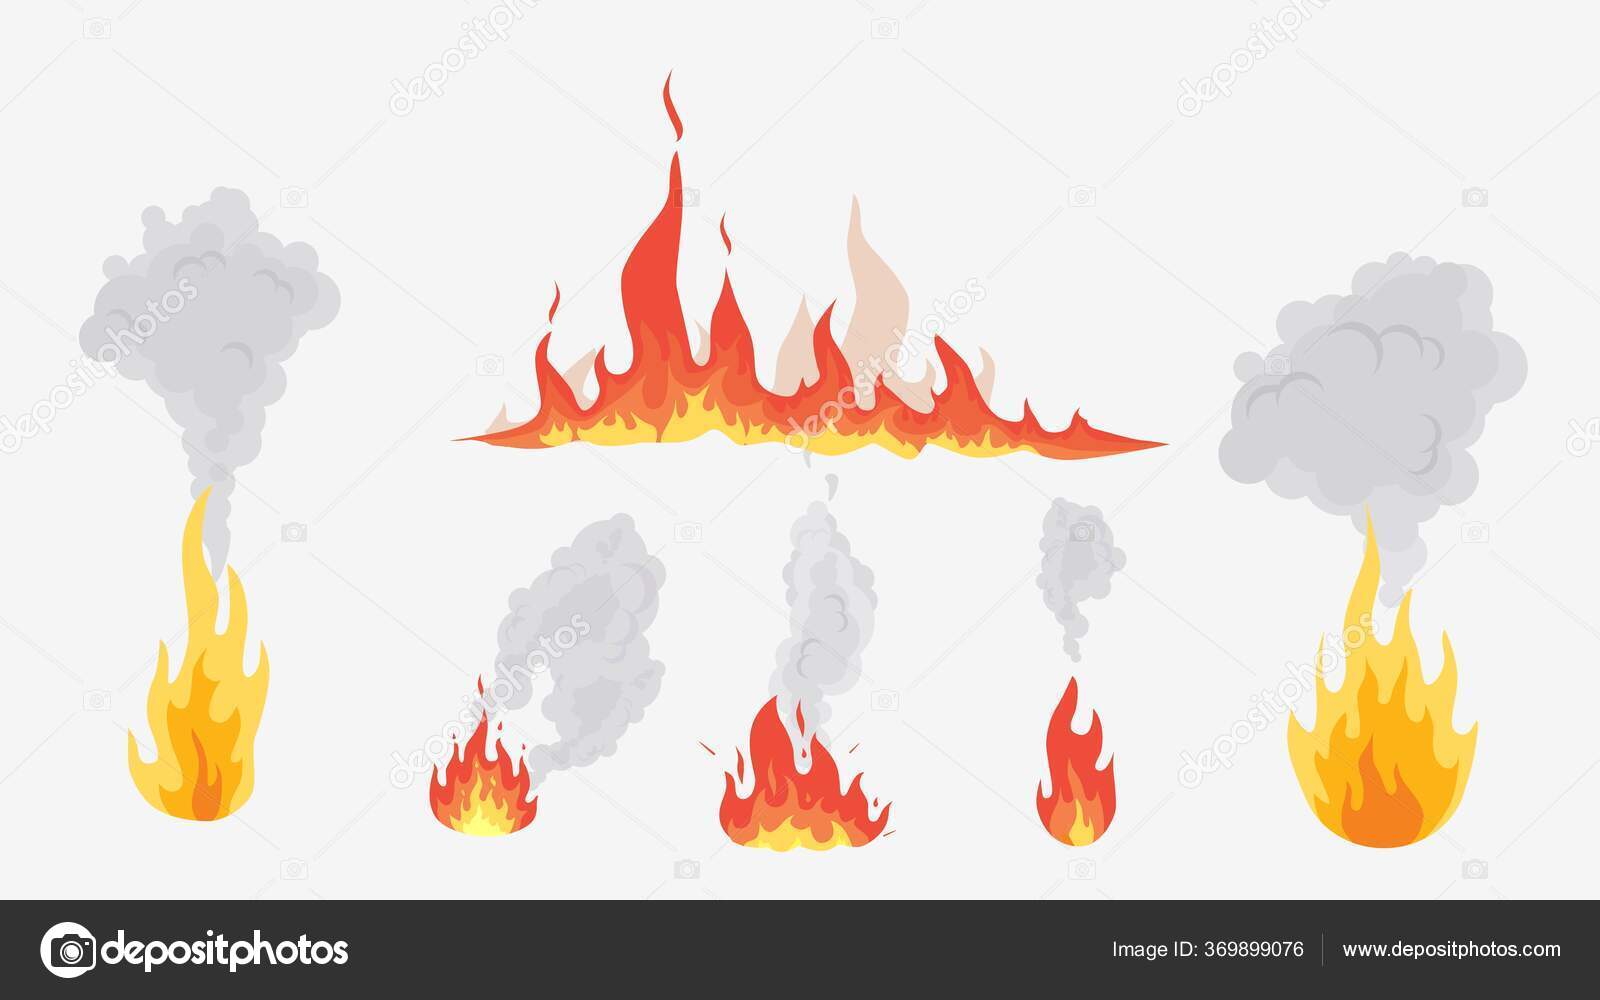 Fogo chama ardente chamas de formas diferentes vetor grátis